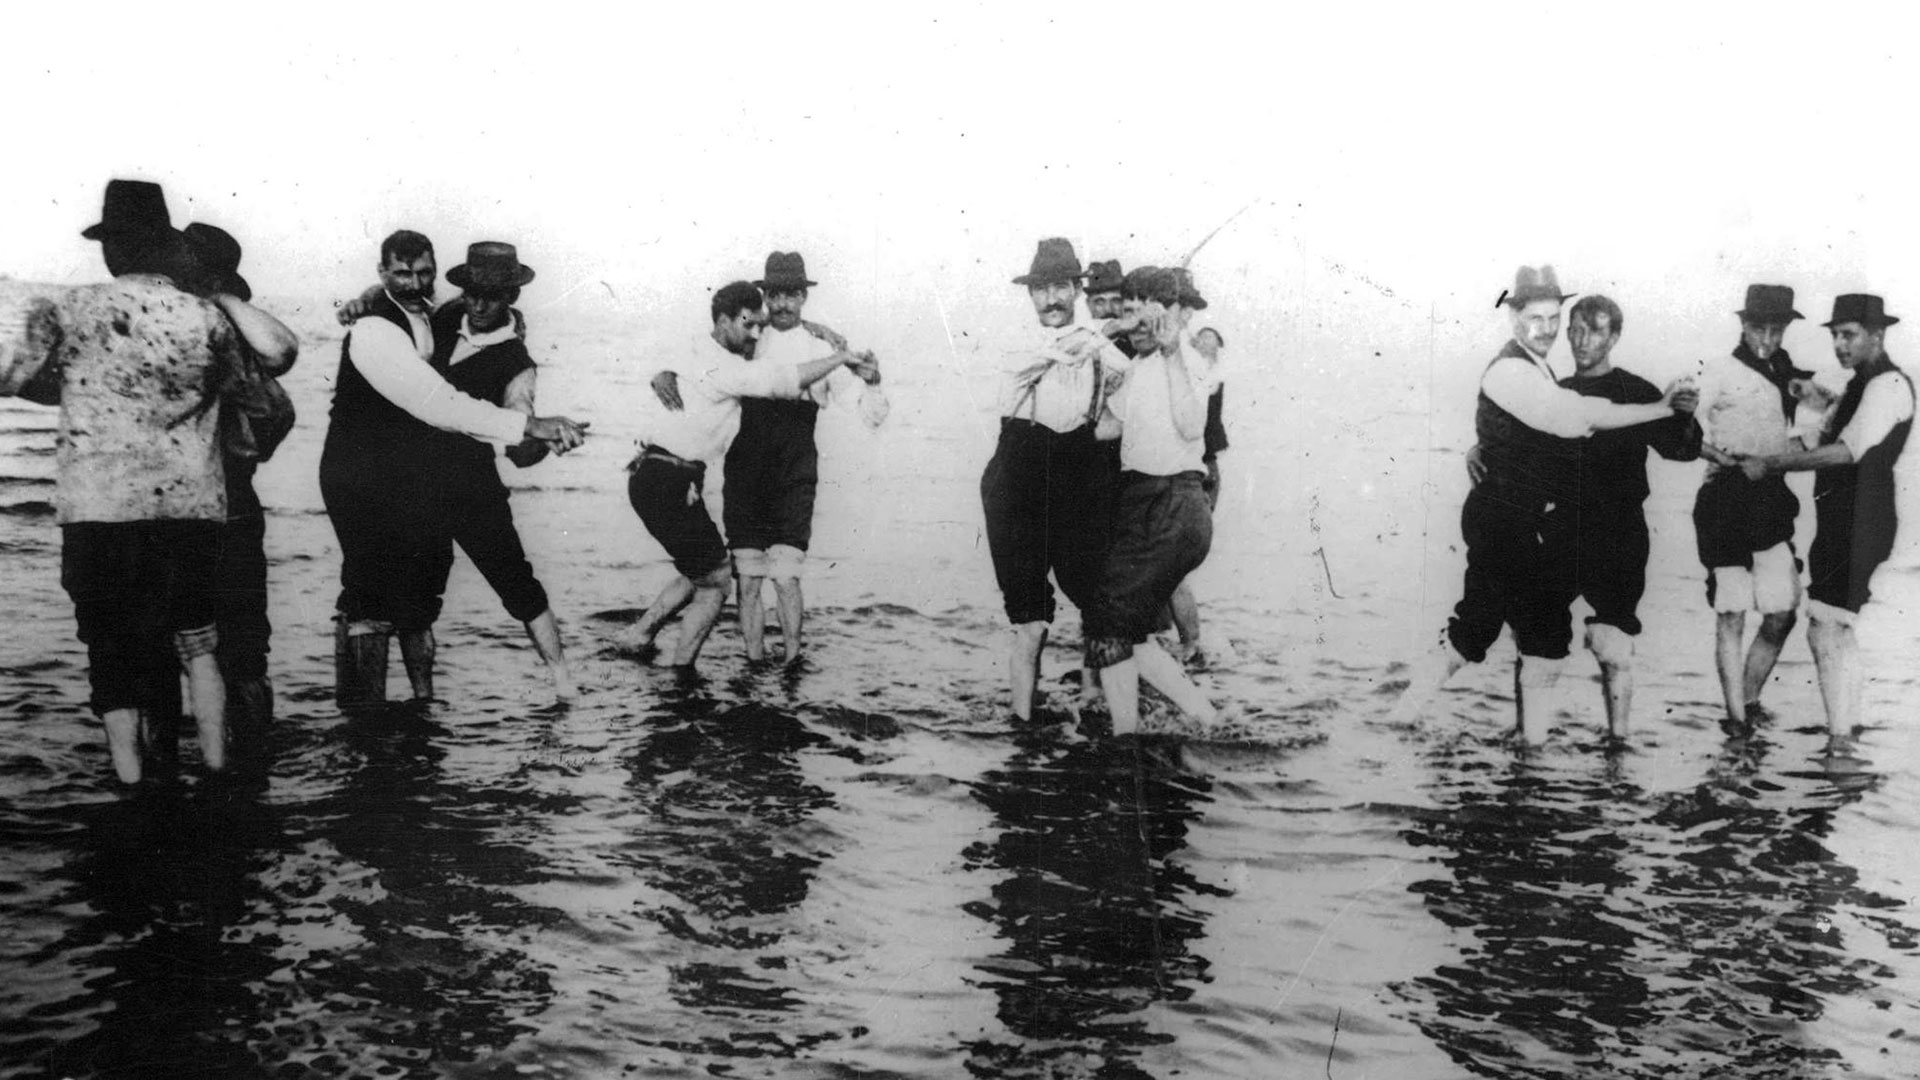 Hombres argentinos bailando tango en la orilla del río en el año 1904 (Crédito: Archivo General de la Nacion Argentina)